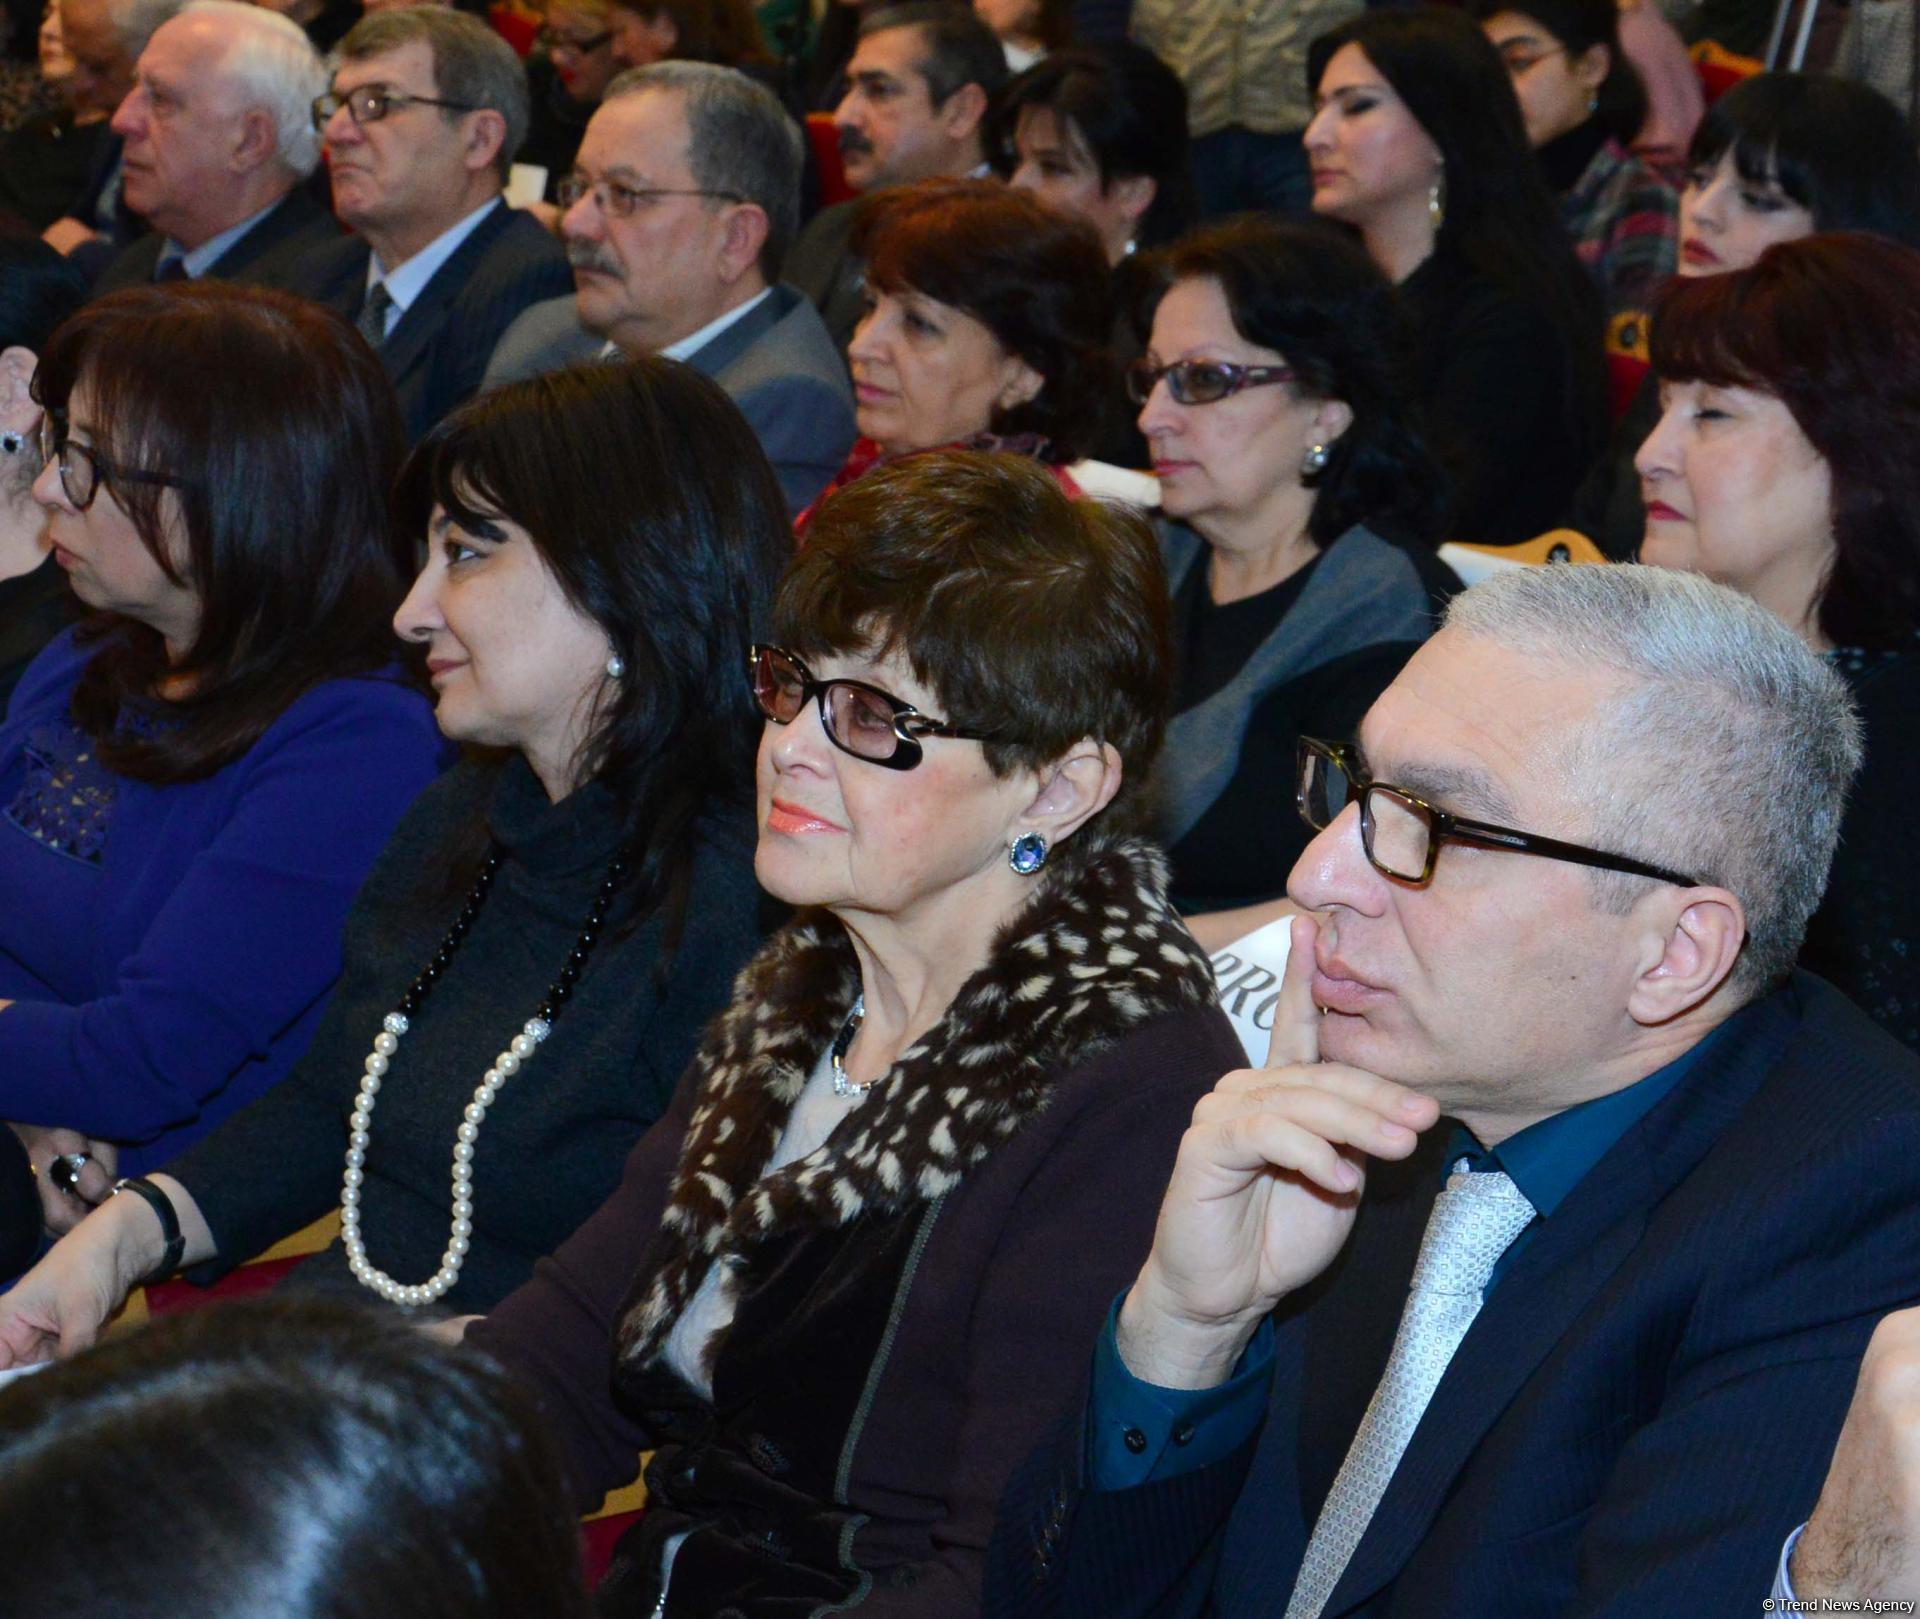 В Баку состоялись вечер классической музыки и презентация книги памяти видного педагога и пианиста Айтекин Гасановой (ФОТО)